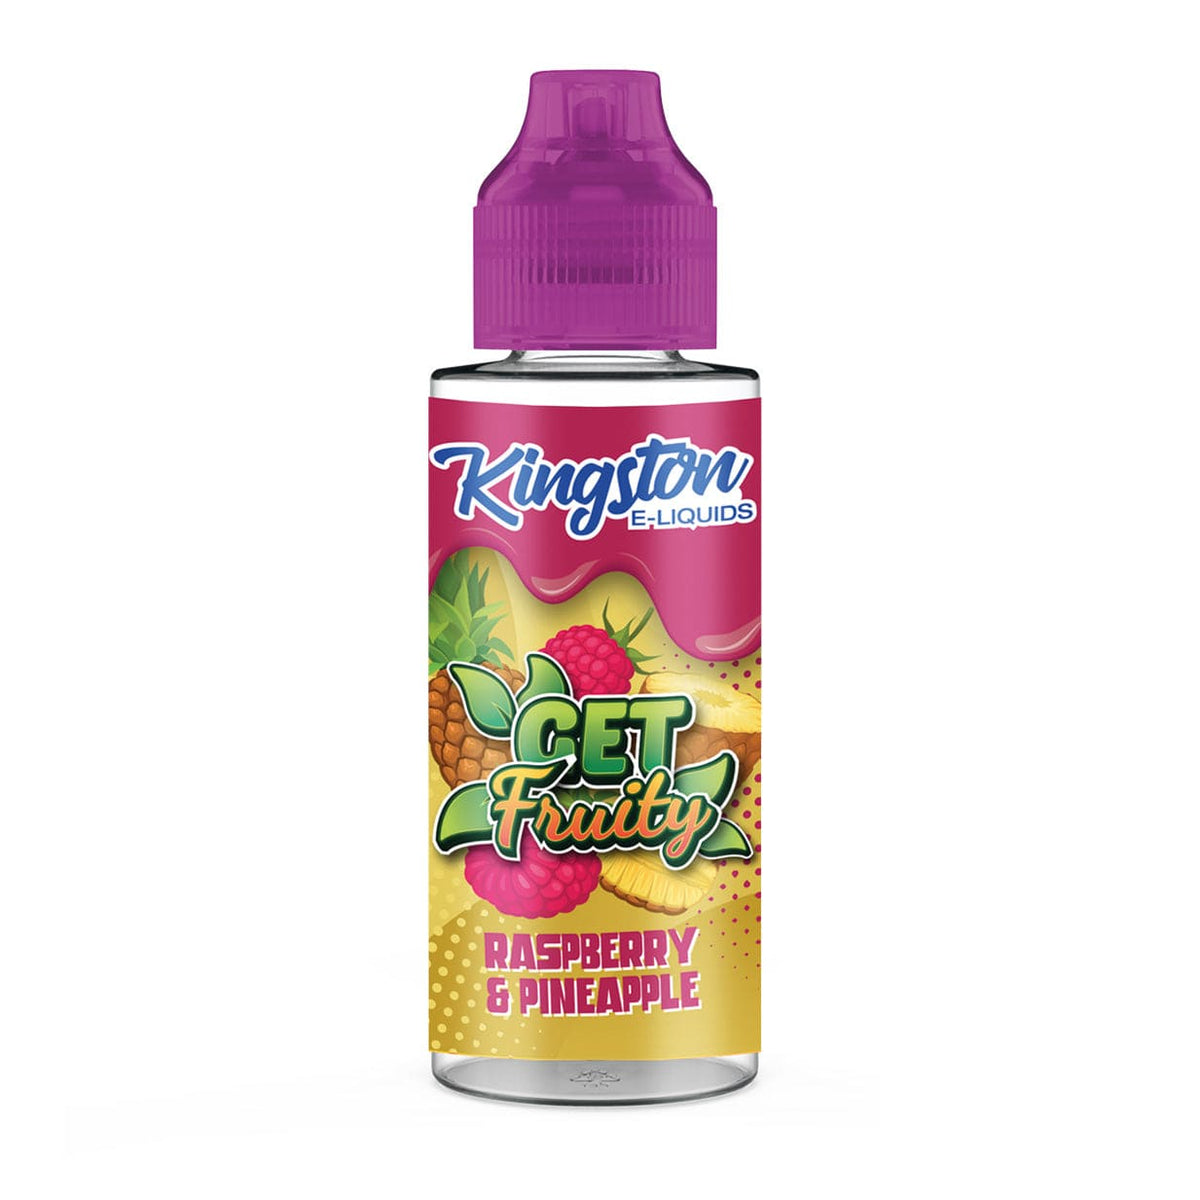 Kingston Get Fruity - Raspberry & Pineapple - 100ml Shortfill